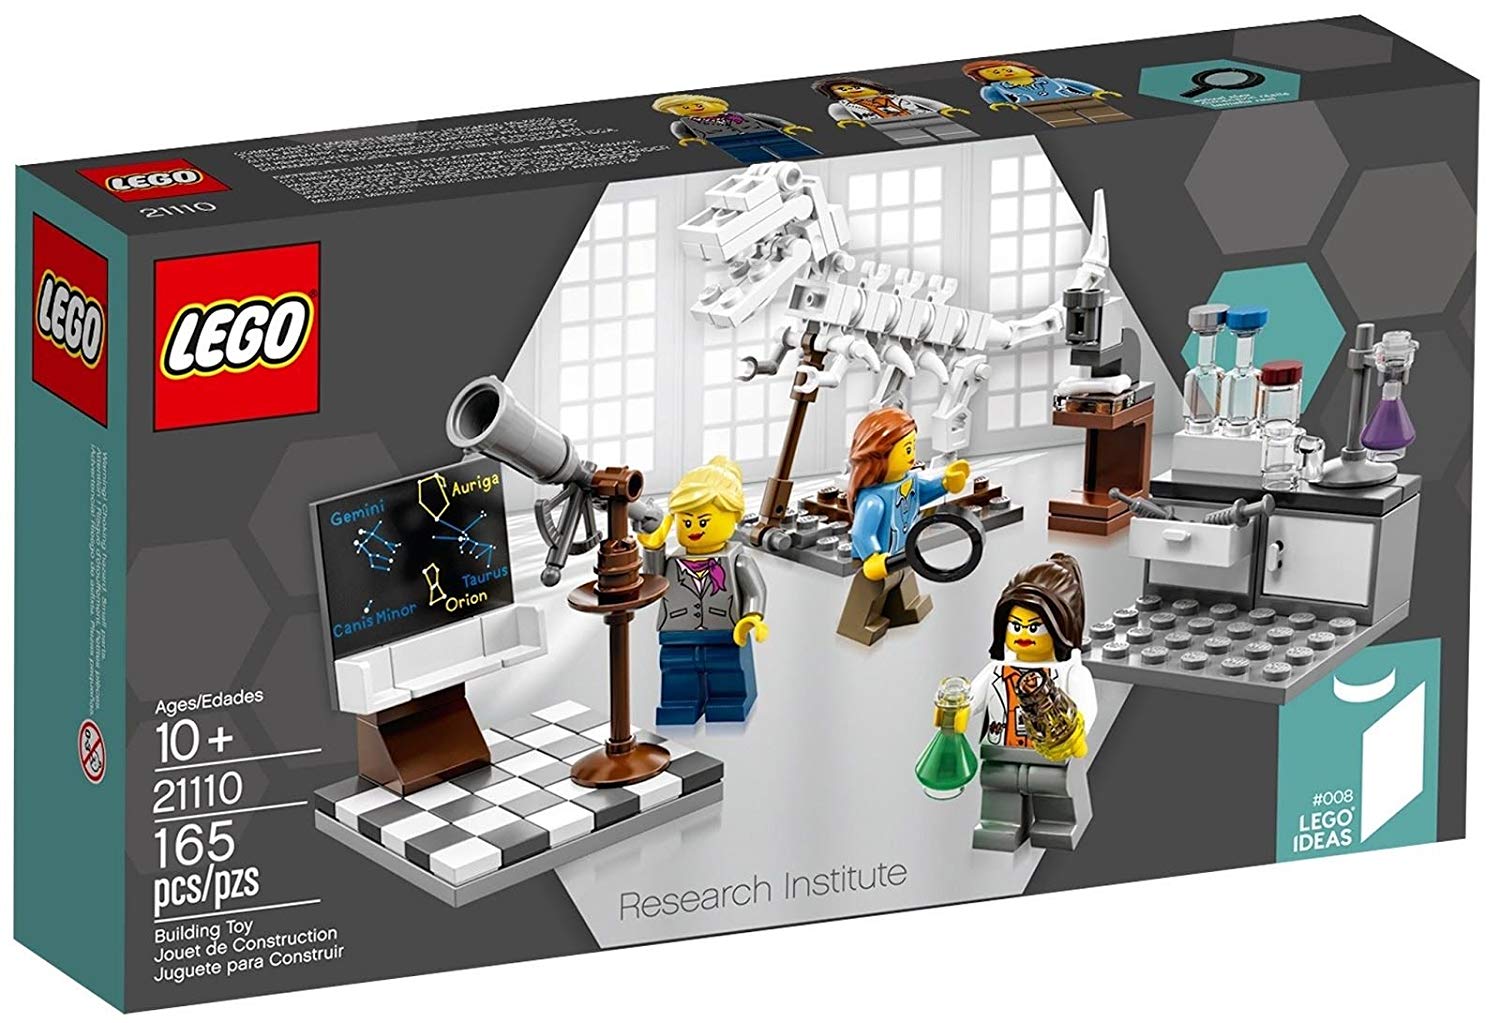 Lego Research Institute 21110